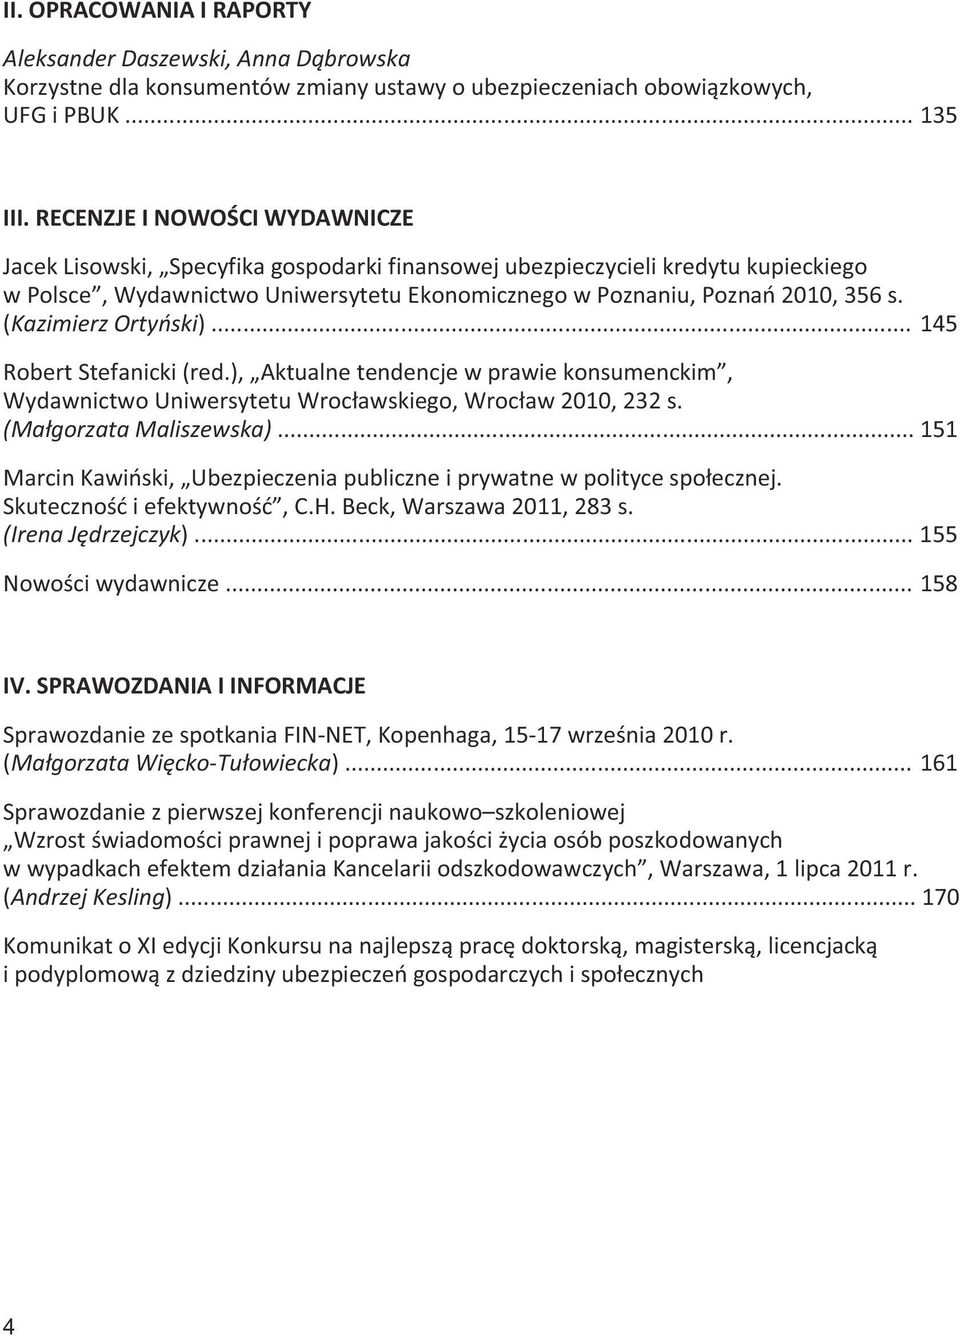 (Kazimierz Ortyński)... 145 Robert Stefanicki (red.), Aktualne tendencje w prawie konsumenckim, Wydawnictwo Uniwersytetu Wrocławskiego, Wrocław 2010, 232 s. (Małgorzata Maliszewska).